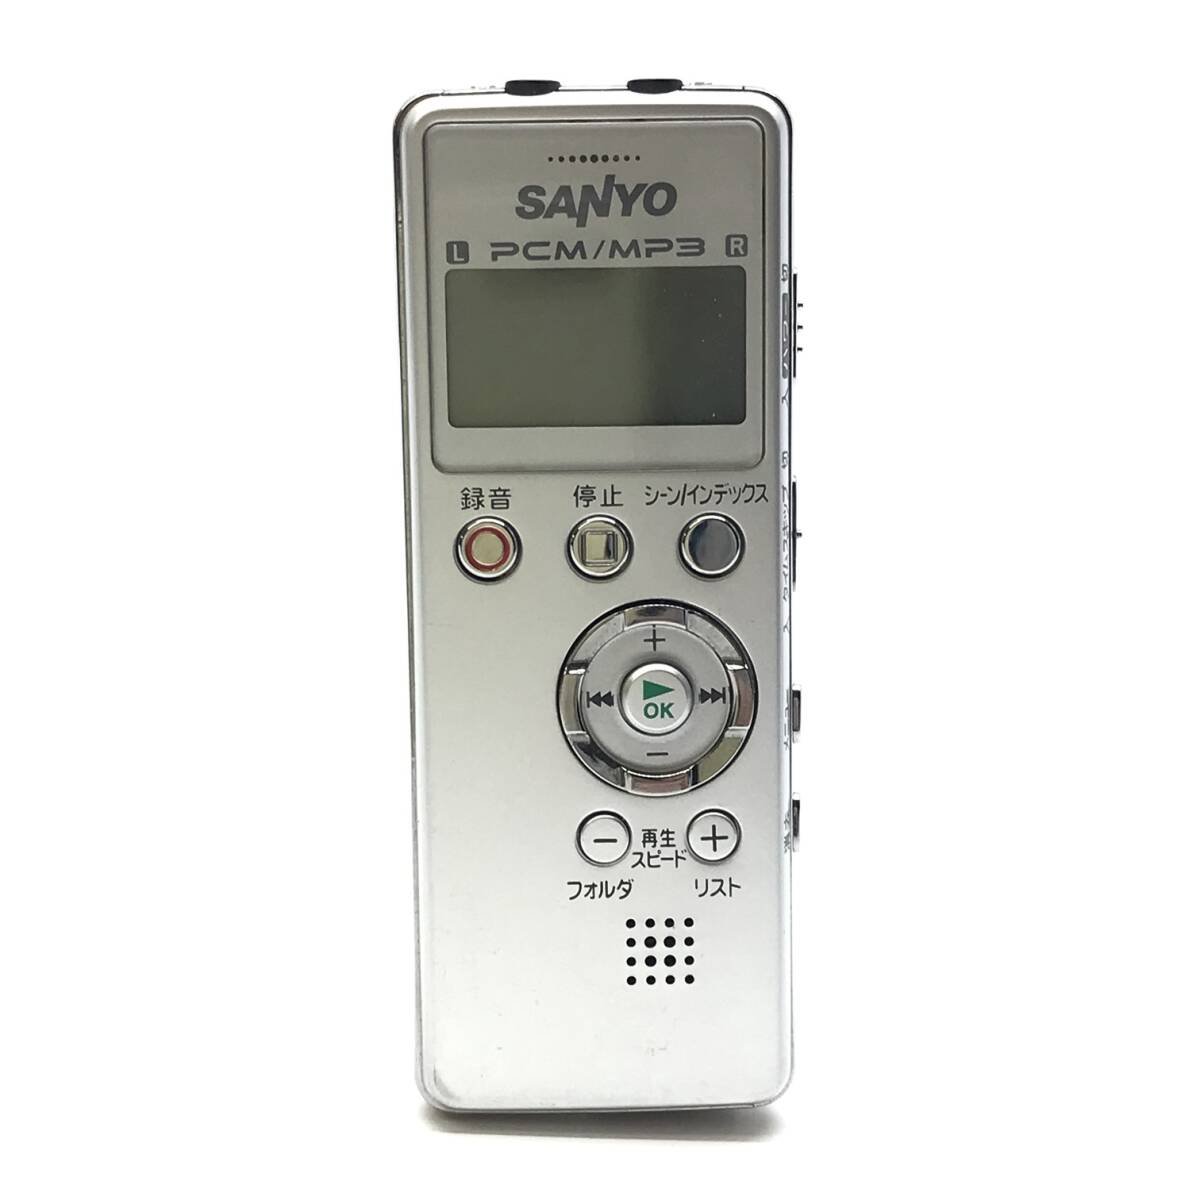 SANYO サンヨー ICR-PS004M ICレコーダー ボイスメモ 会議録音 SDカード対応リニアPCMレコーダー 電源OK 管理YK24001408_画像1